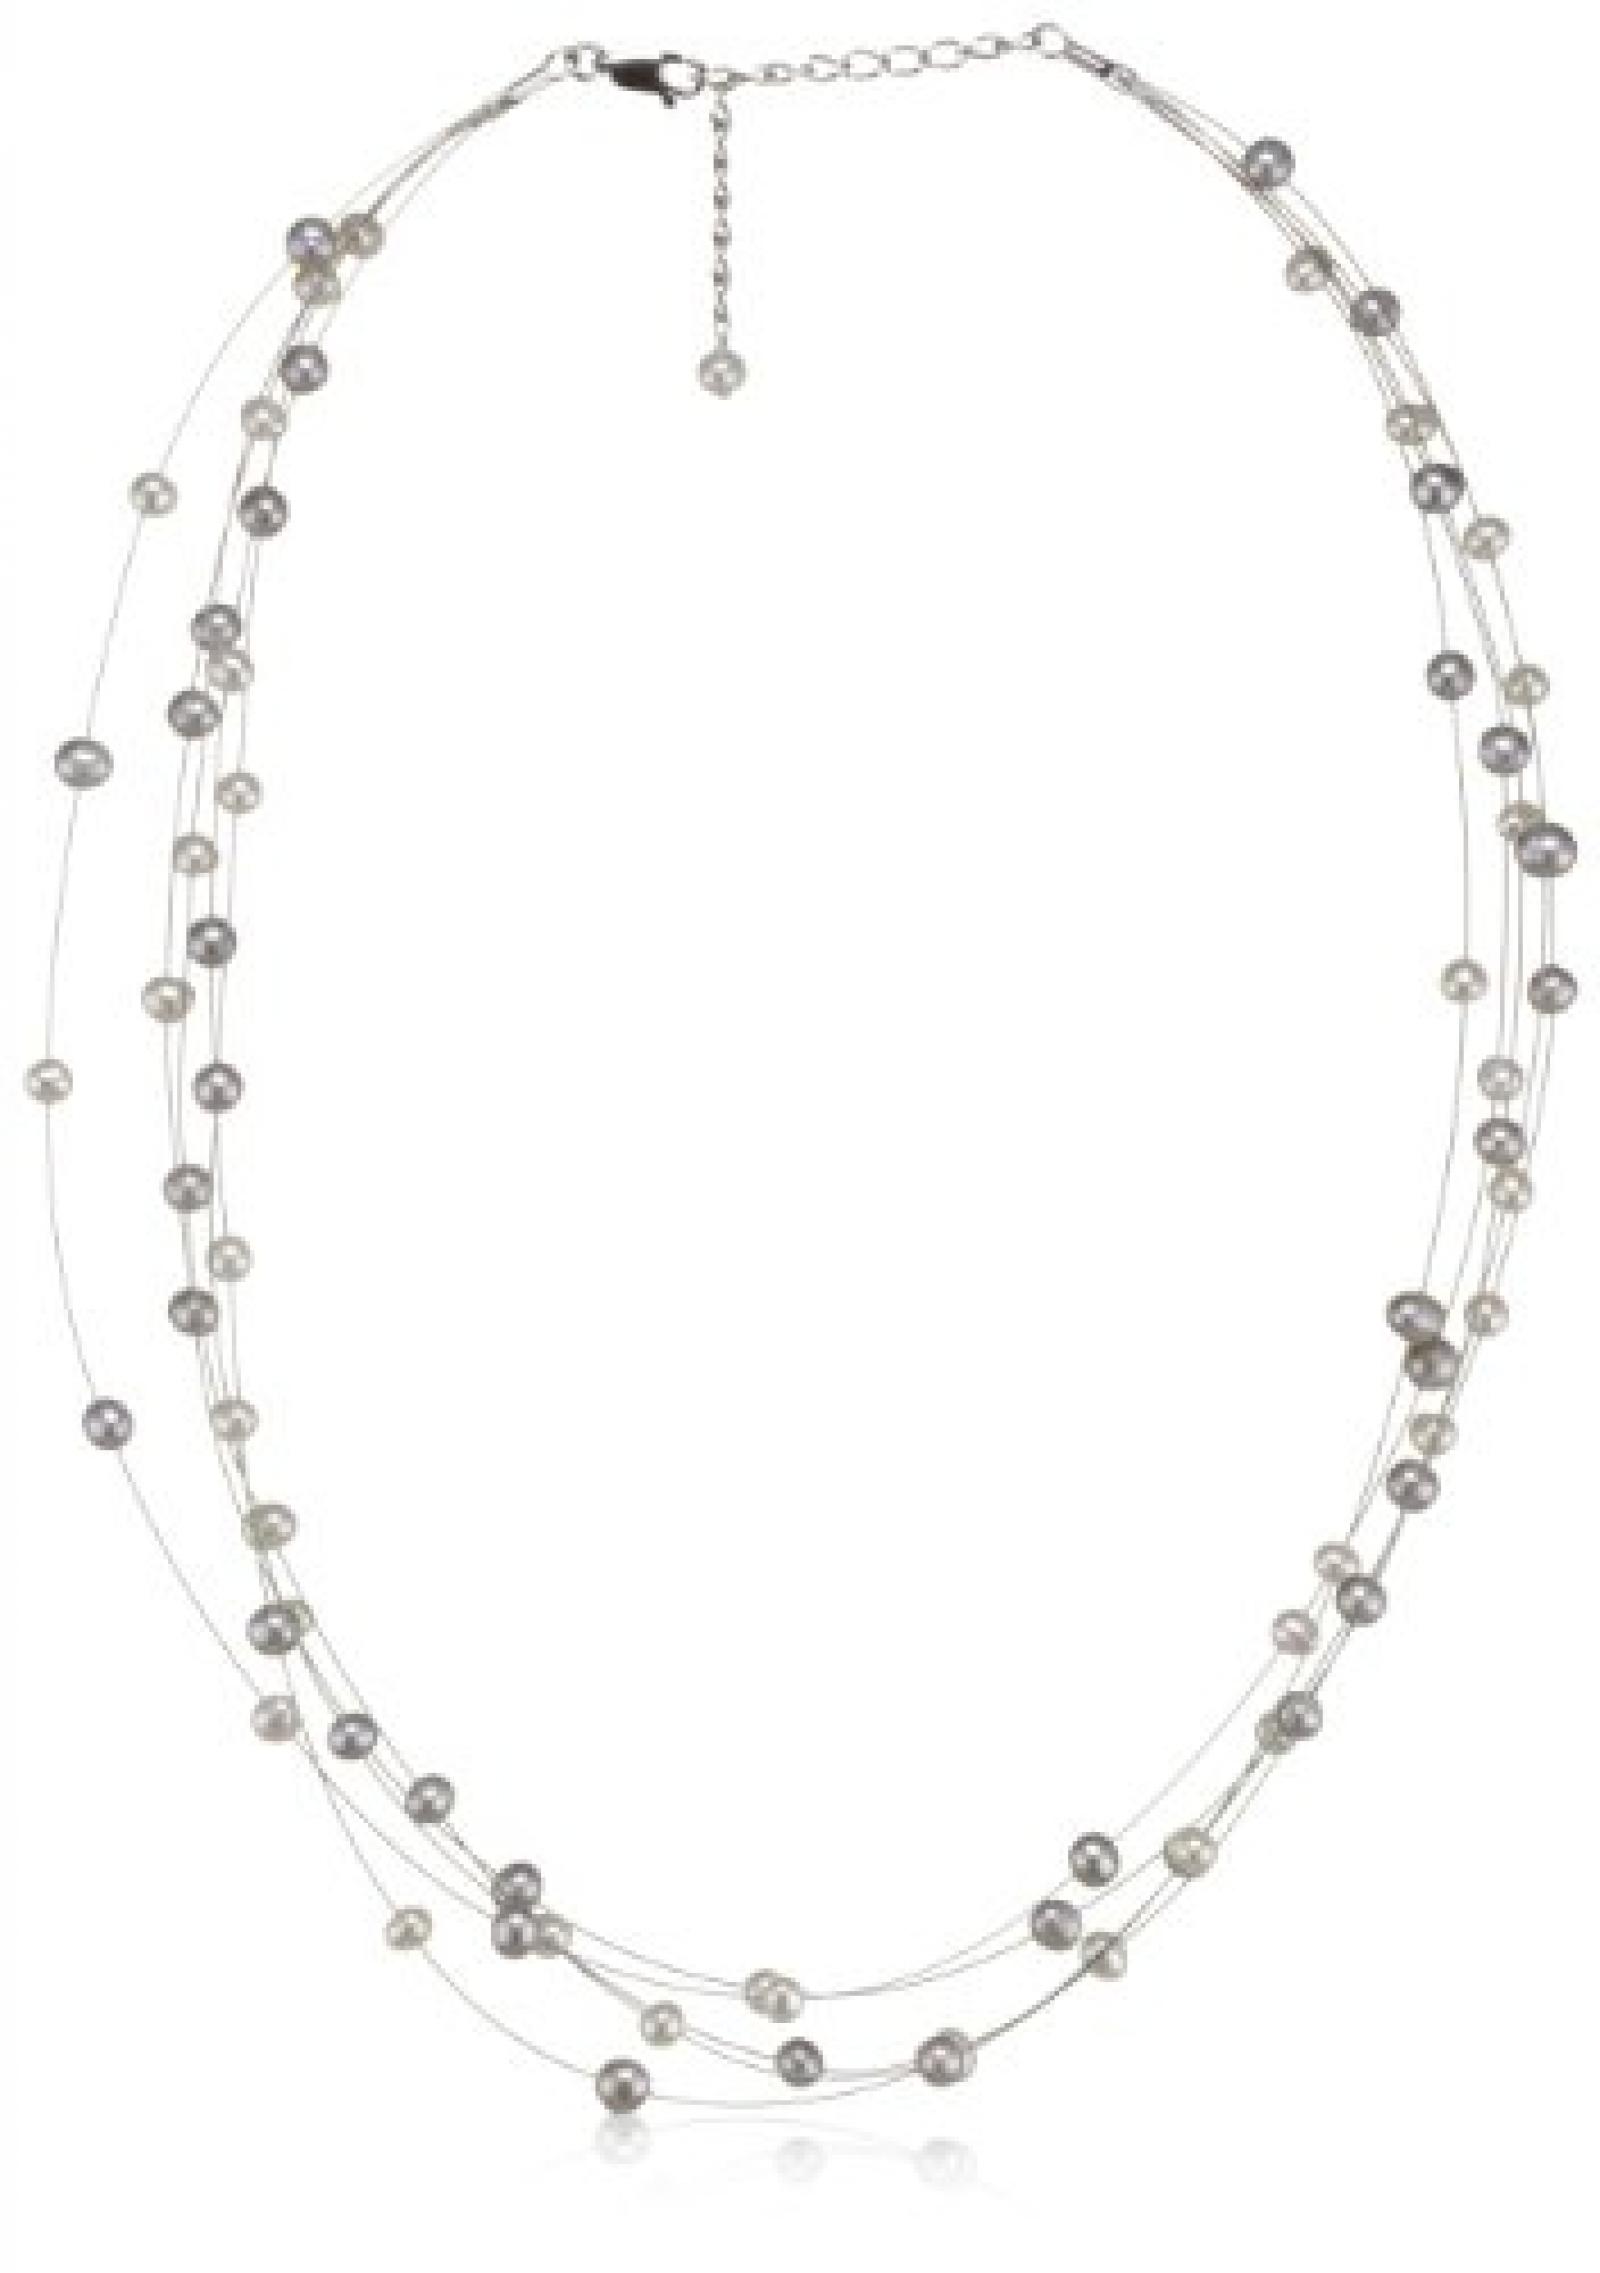 Valero Pearls Classic Collection Damen-Kette Hochwertige Süßwasser-Zuchtperlen in ca.  6 mm Oval weiß / silber 925 Sterling Silber    50 cm   400321 